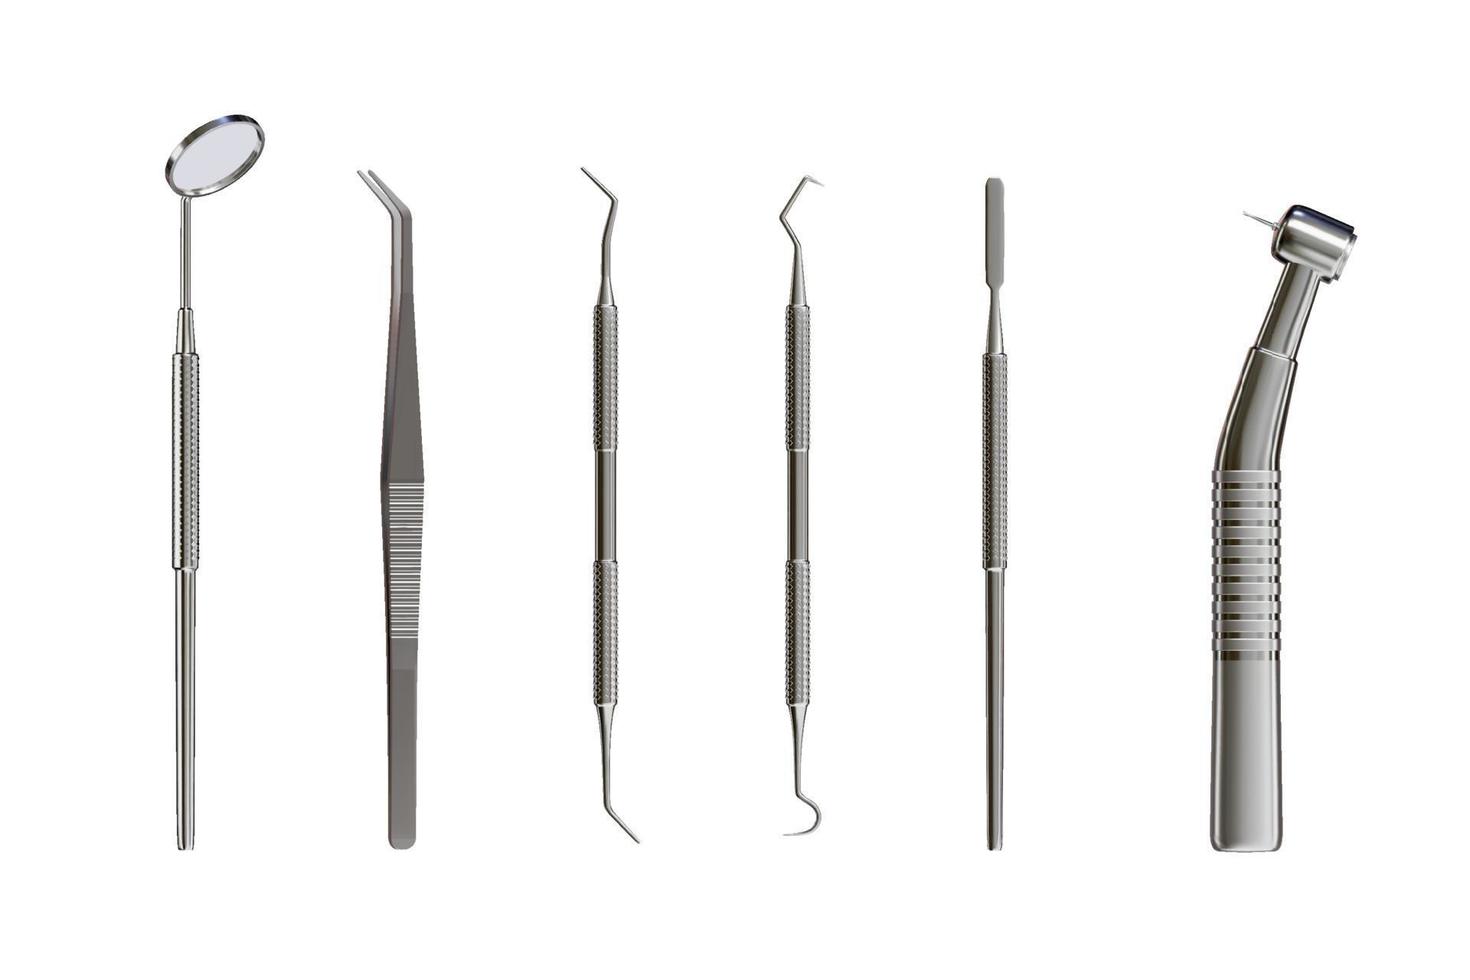 Ensemble d'outils dentaires professionnels réalistes 3d pour l'inspection dentaire. soins des dents, concept de santé. équipement médical de base en métal, vue de dessus d'instrument. illustration vectorielle isolée sur fond blanc vecteur